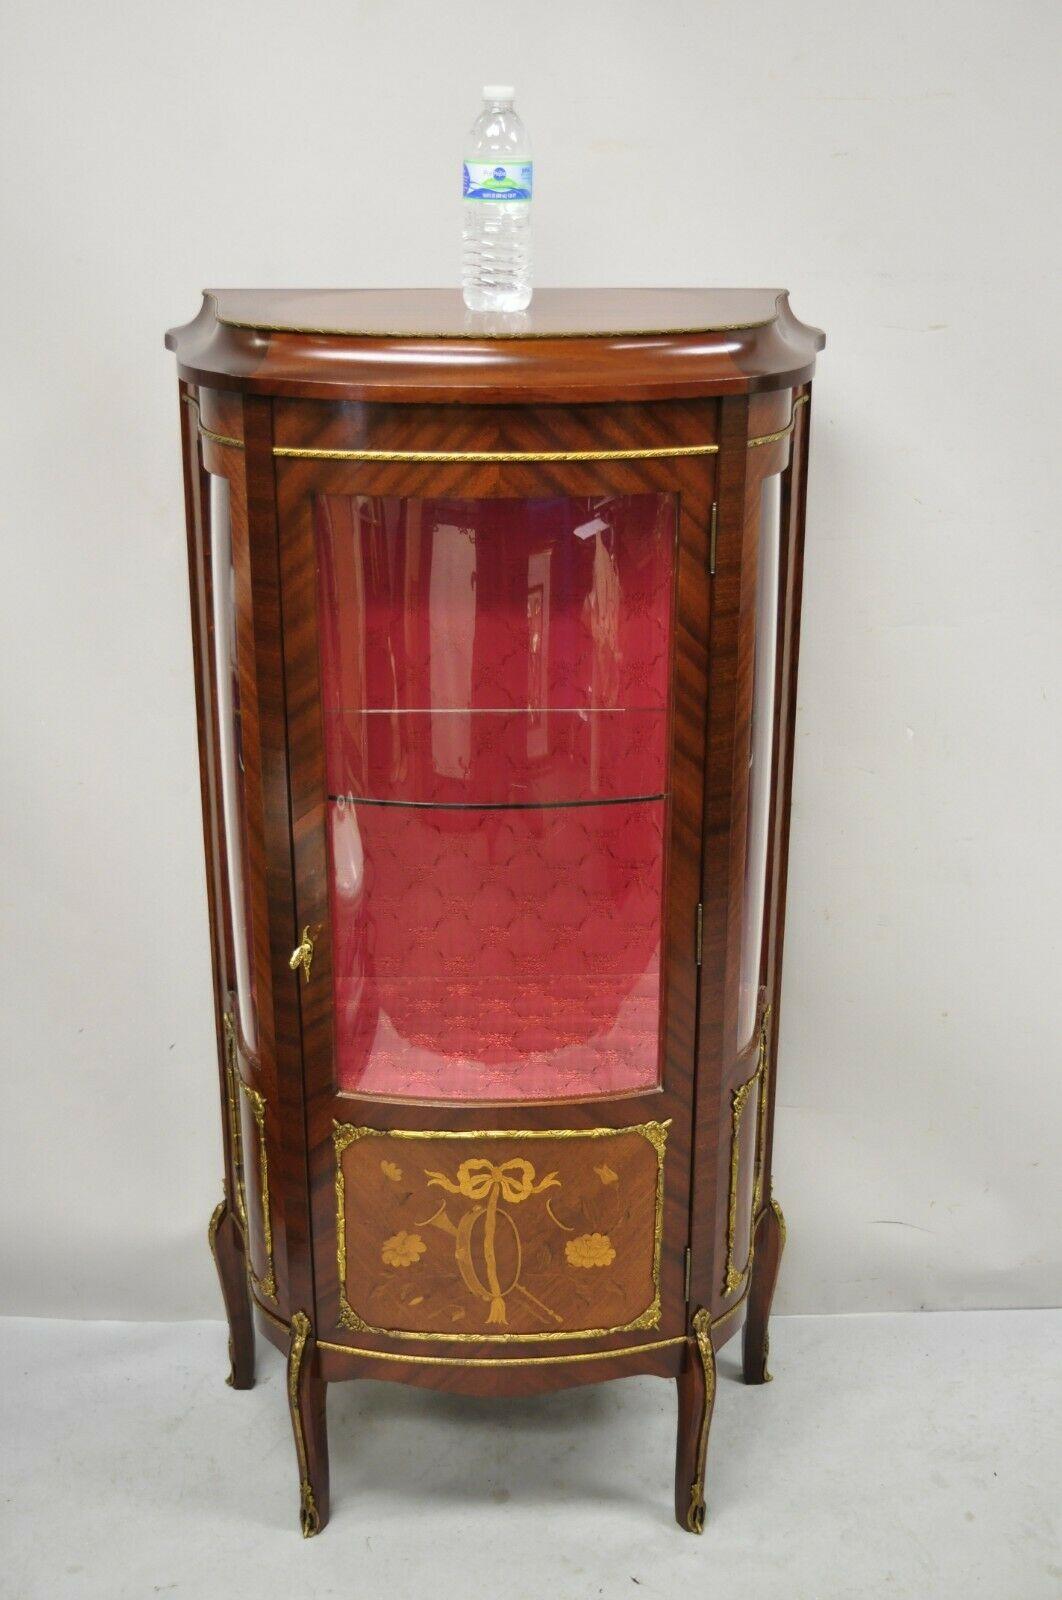 French Louis XV Style Small Curio Display Cabinet Bowed Glass and Inlay. Das Möbelstück verfügt über eine gewölbte Glastür und Seitenteile, eine florale Satinholzeinlage, eine gepolsterte Innenausstattung, bronzefarbenes Ormolu, eine schöne